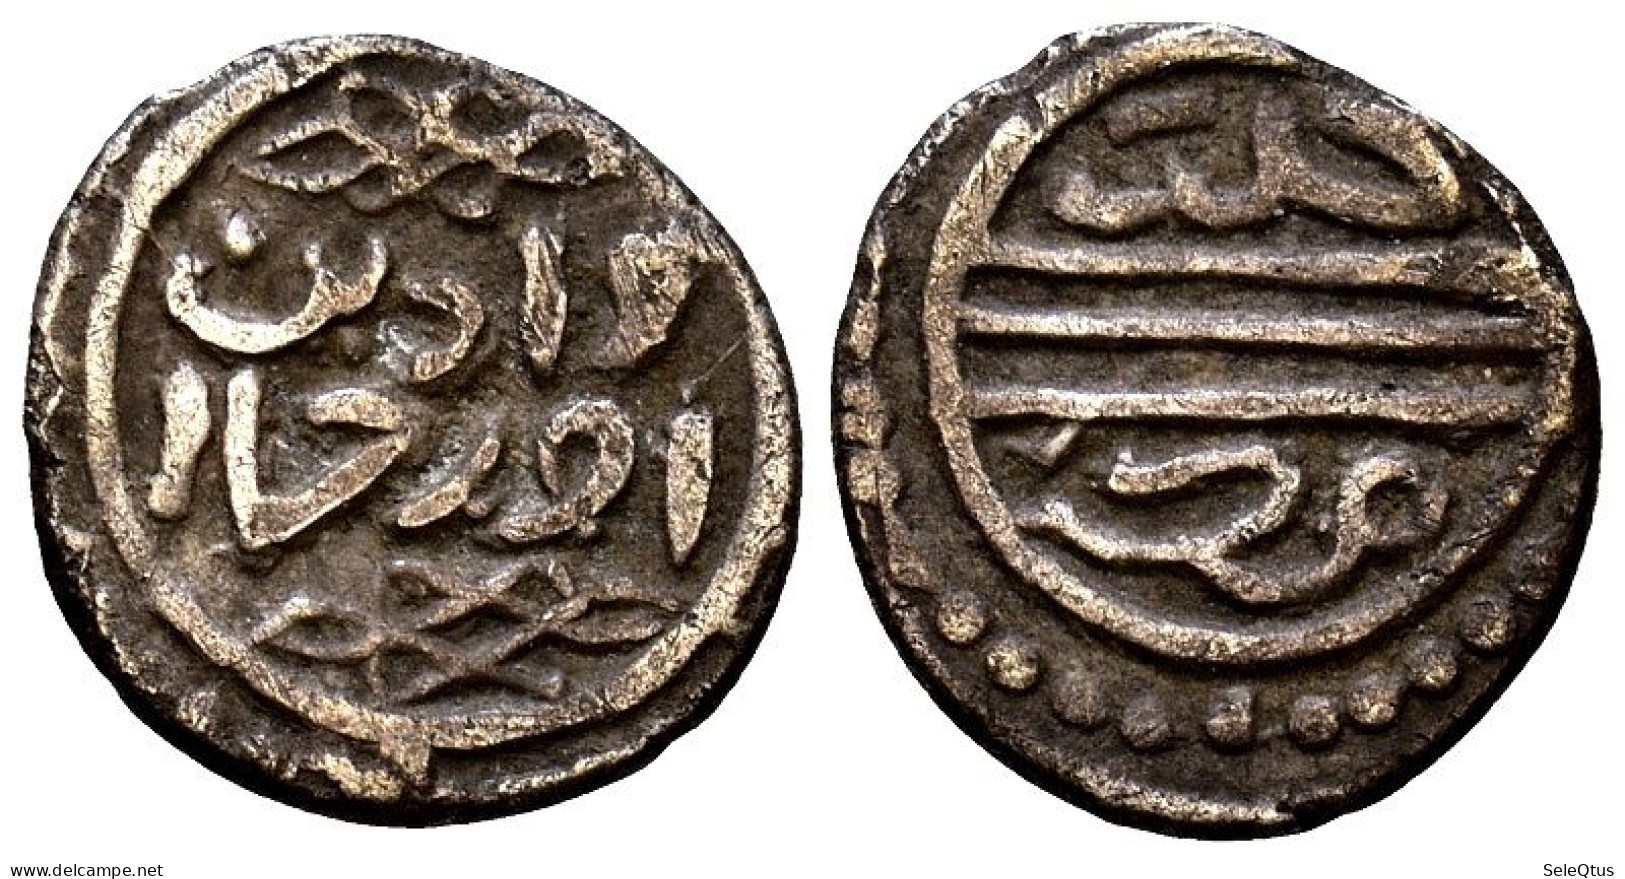 Monedas Antiguas - Ancient Coins (00119-007-1051) - Islamische Münzen